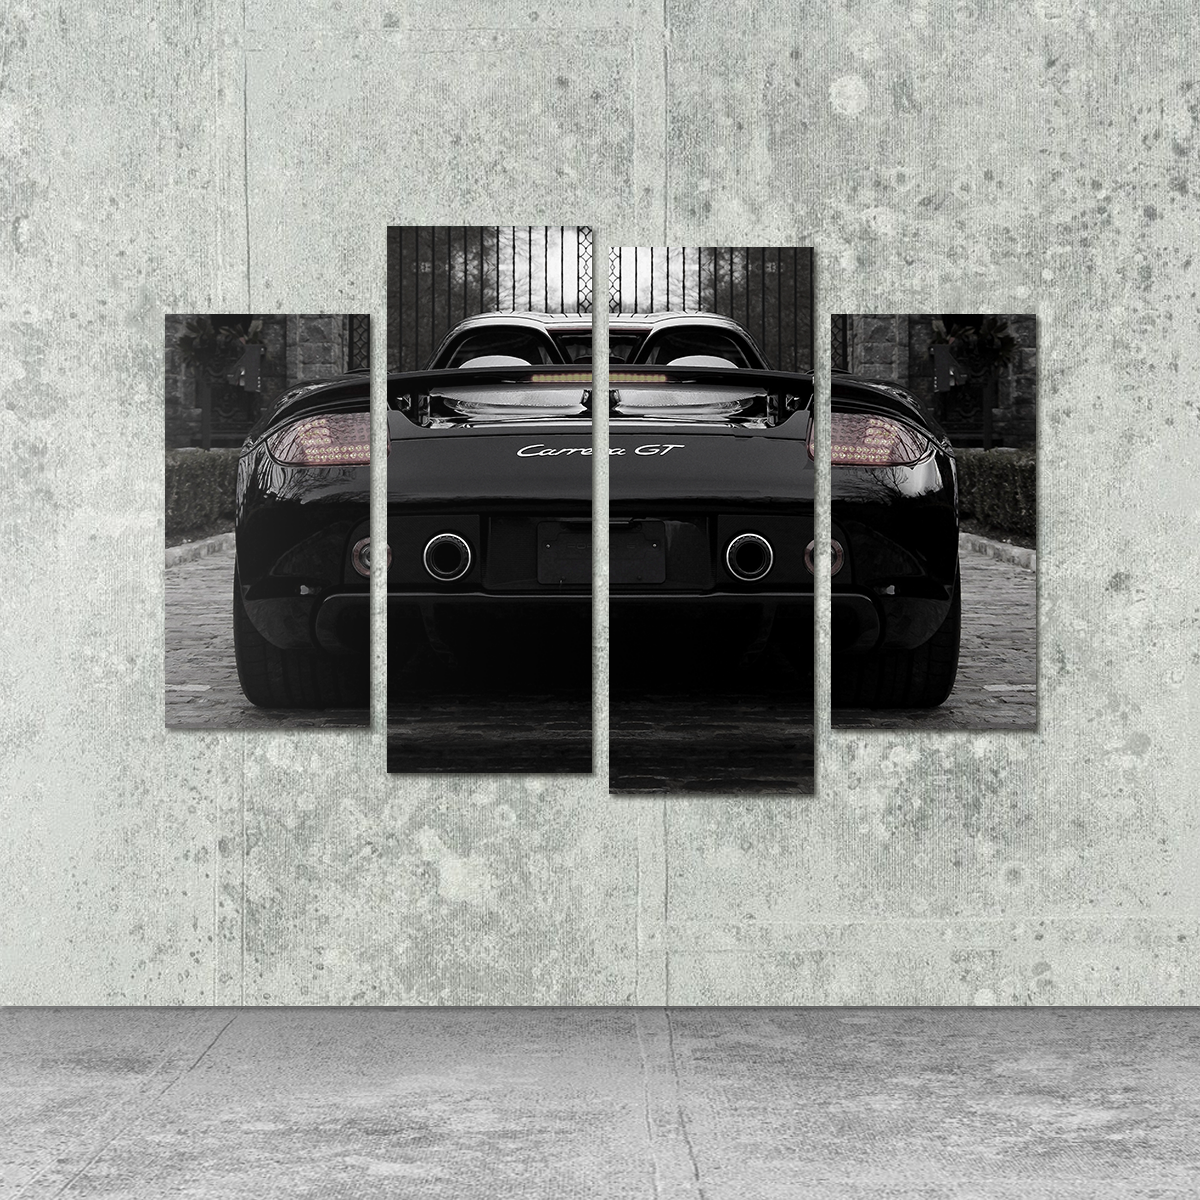 Porsche Carrera GT Sport Racing Luxury Car Wall Decal Art Mural